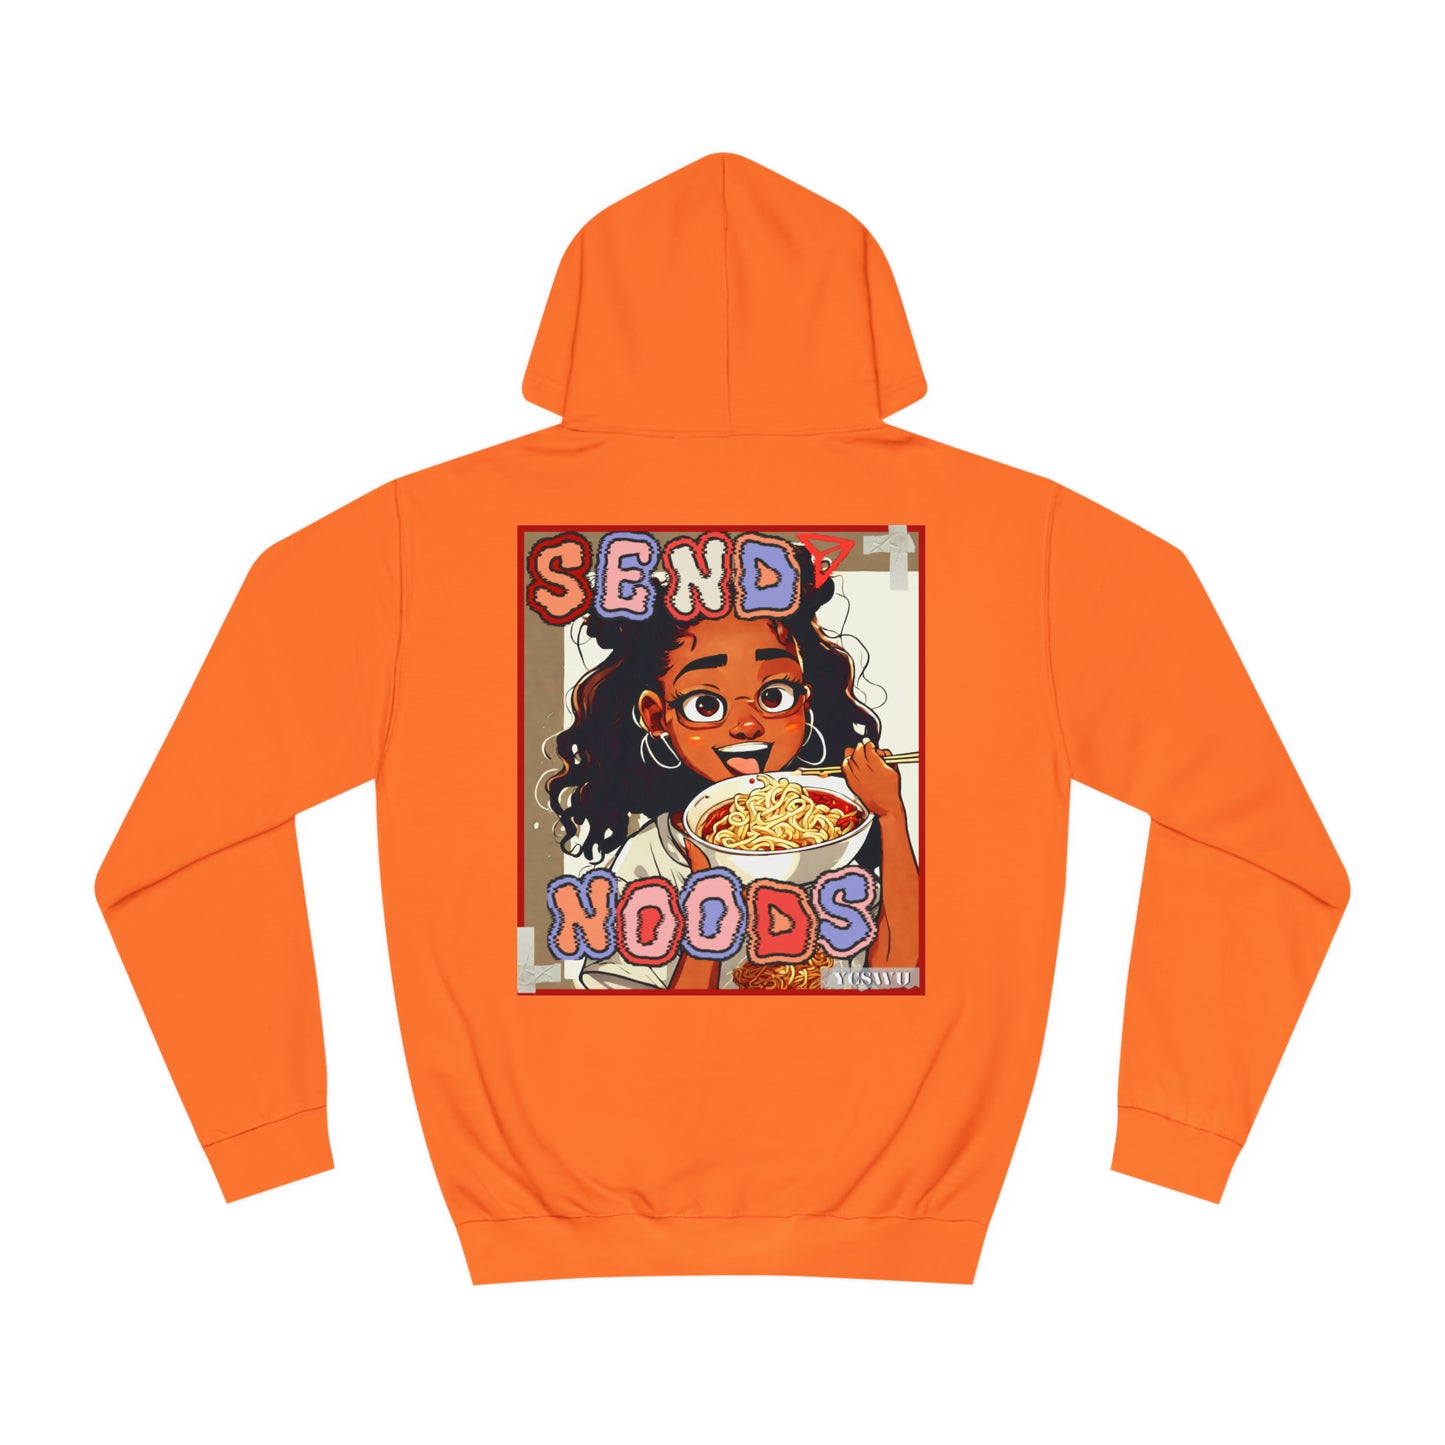 “Send Noods” hoodie